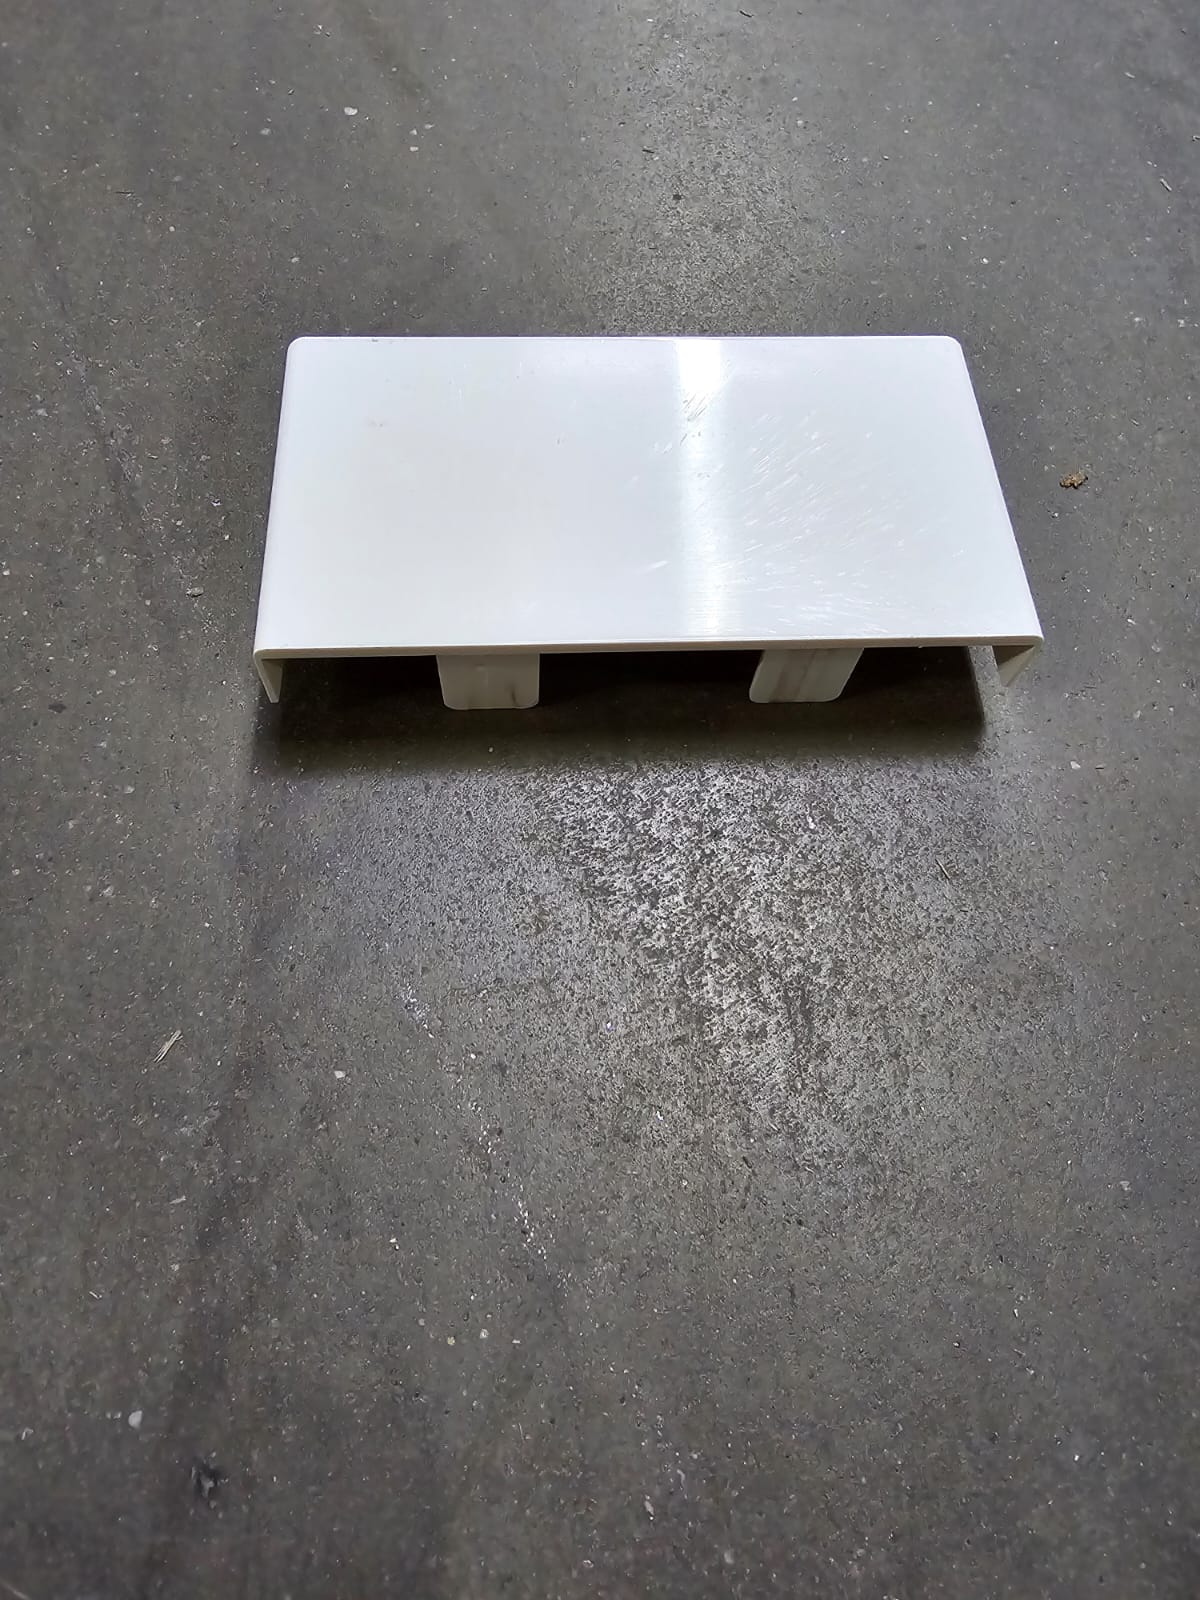 Enddeckel für Brüstungskanal Kunststoff  110 x 60 mm weiß, RAL 9001